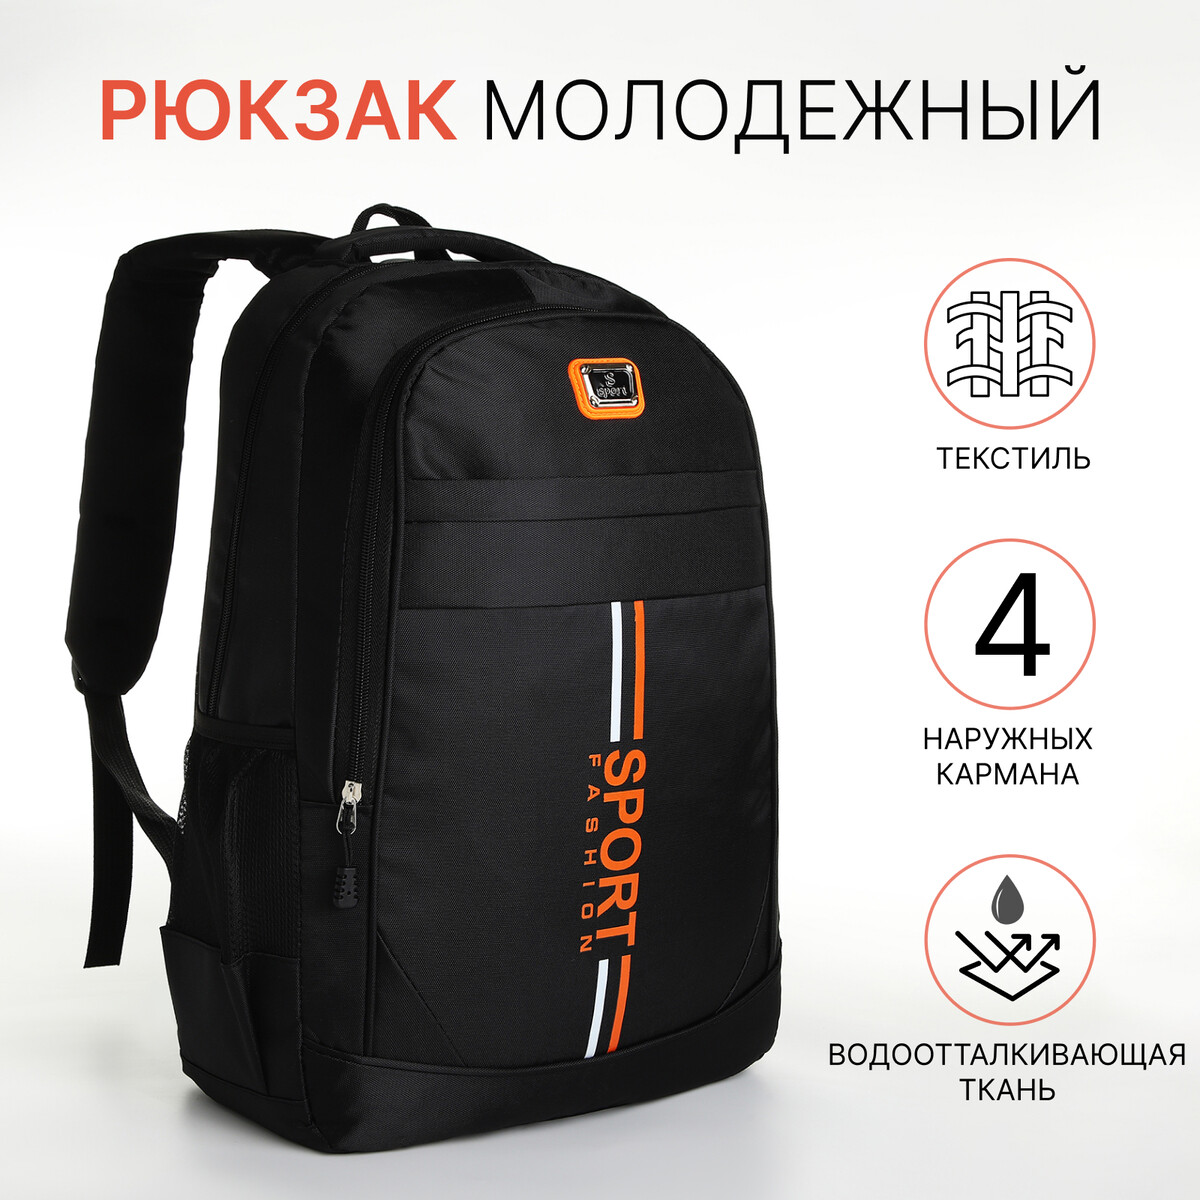 Рюкзак молодежный на молнии, 4 кармана, цвет черный/оранжевый рюкзак молодежный из текстиля 2 отдела на молнии 3 кармана оранжевый